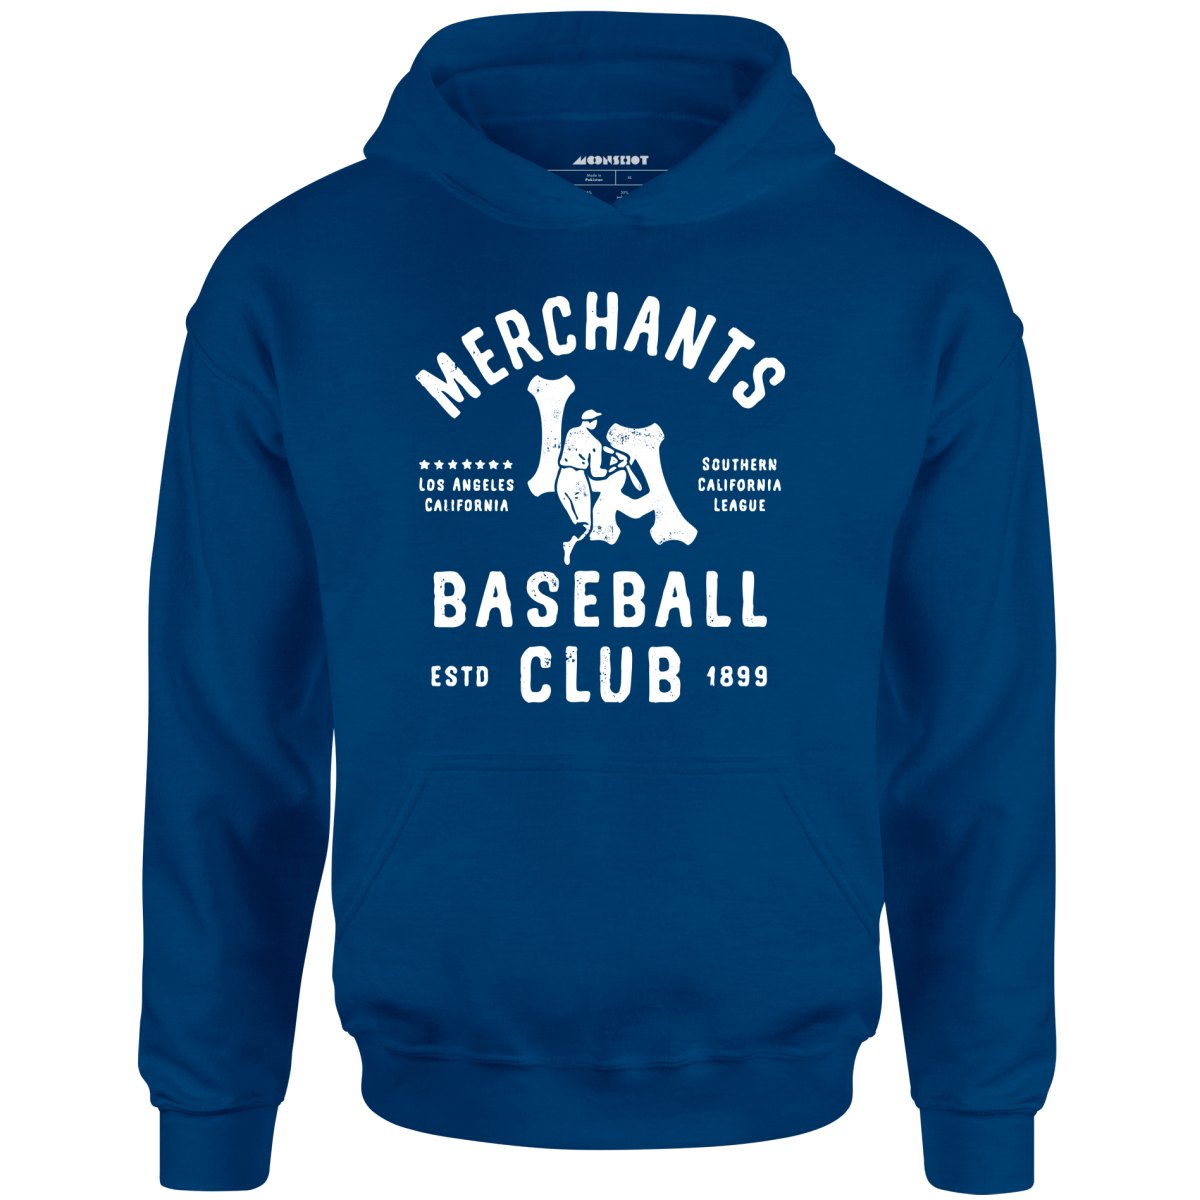 Los Angeles Merchants - California - Vintage Defunct Baseball Teams - Unisex Hoodie